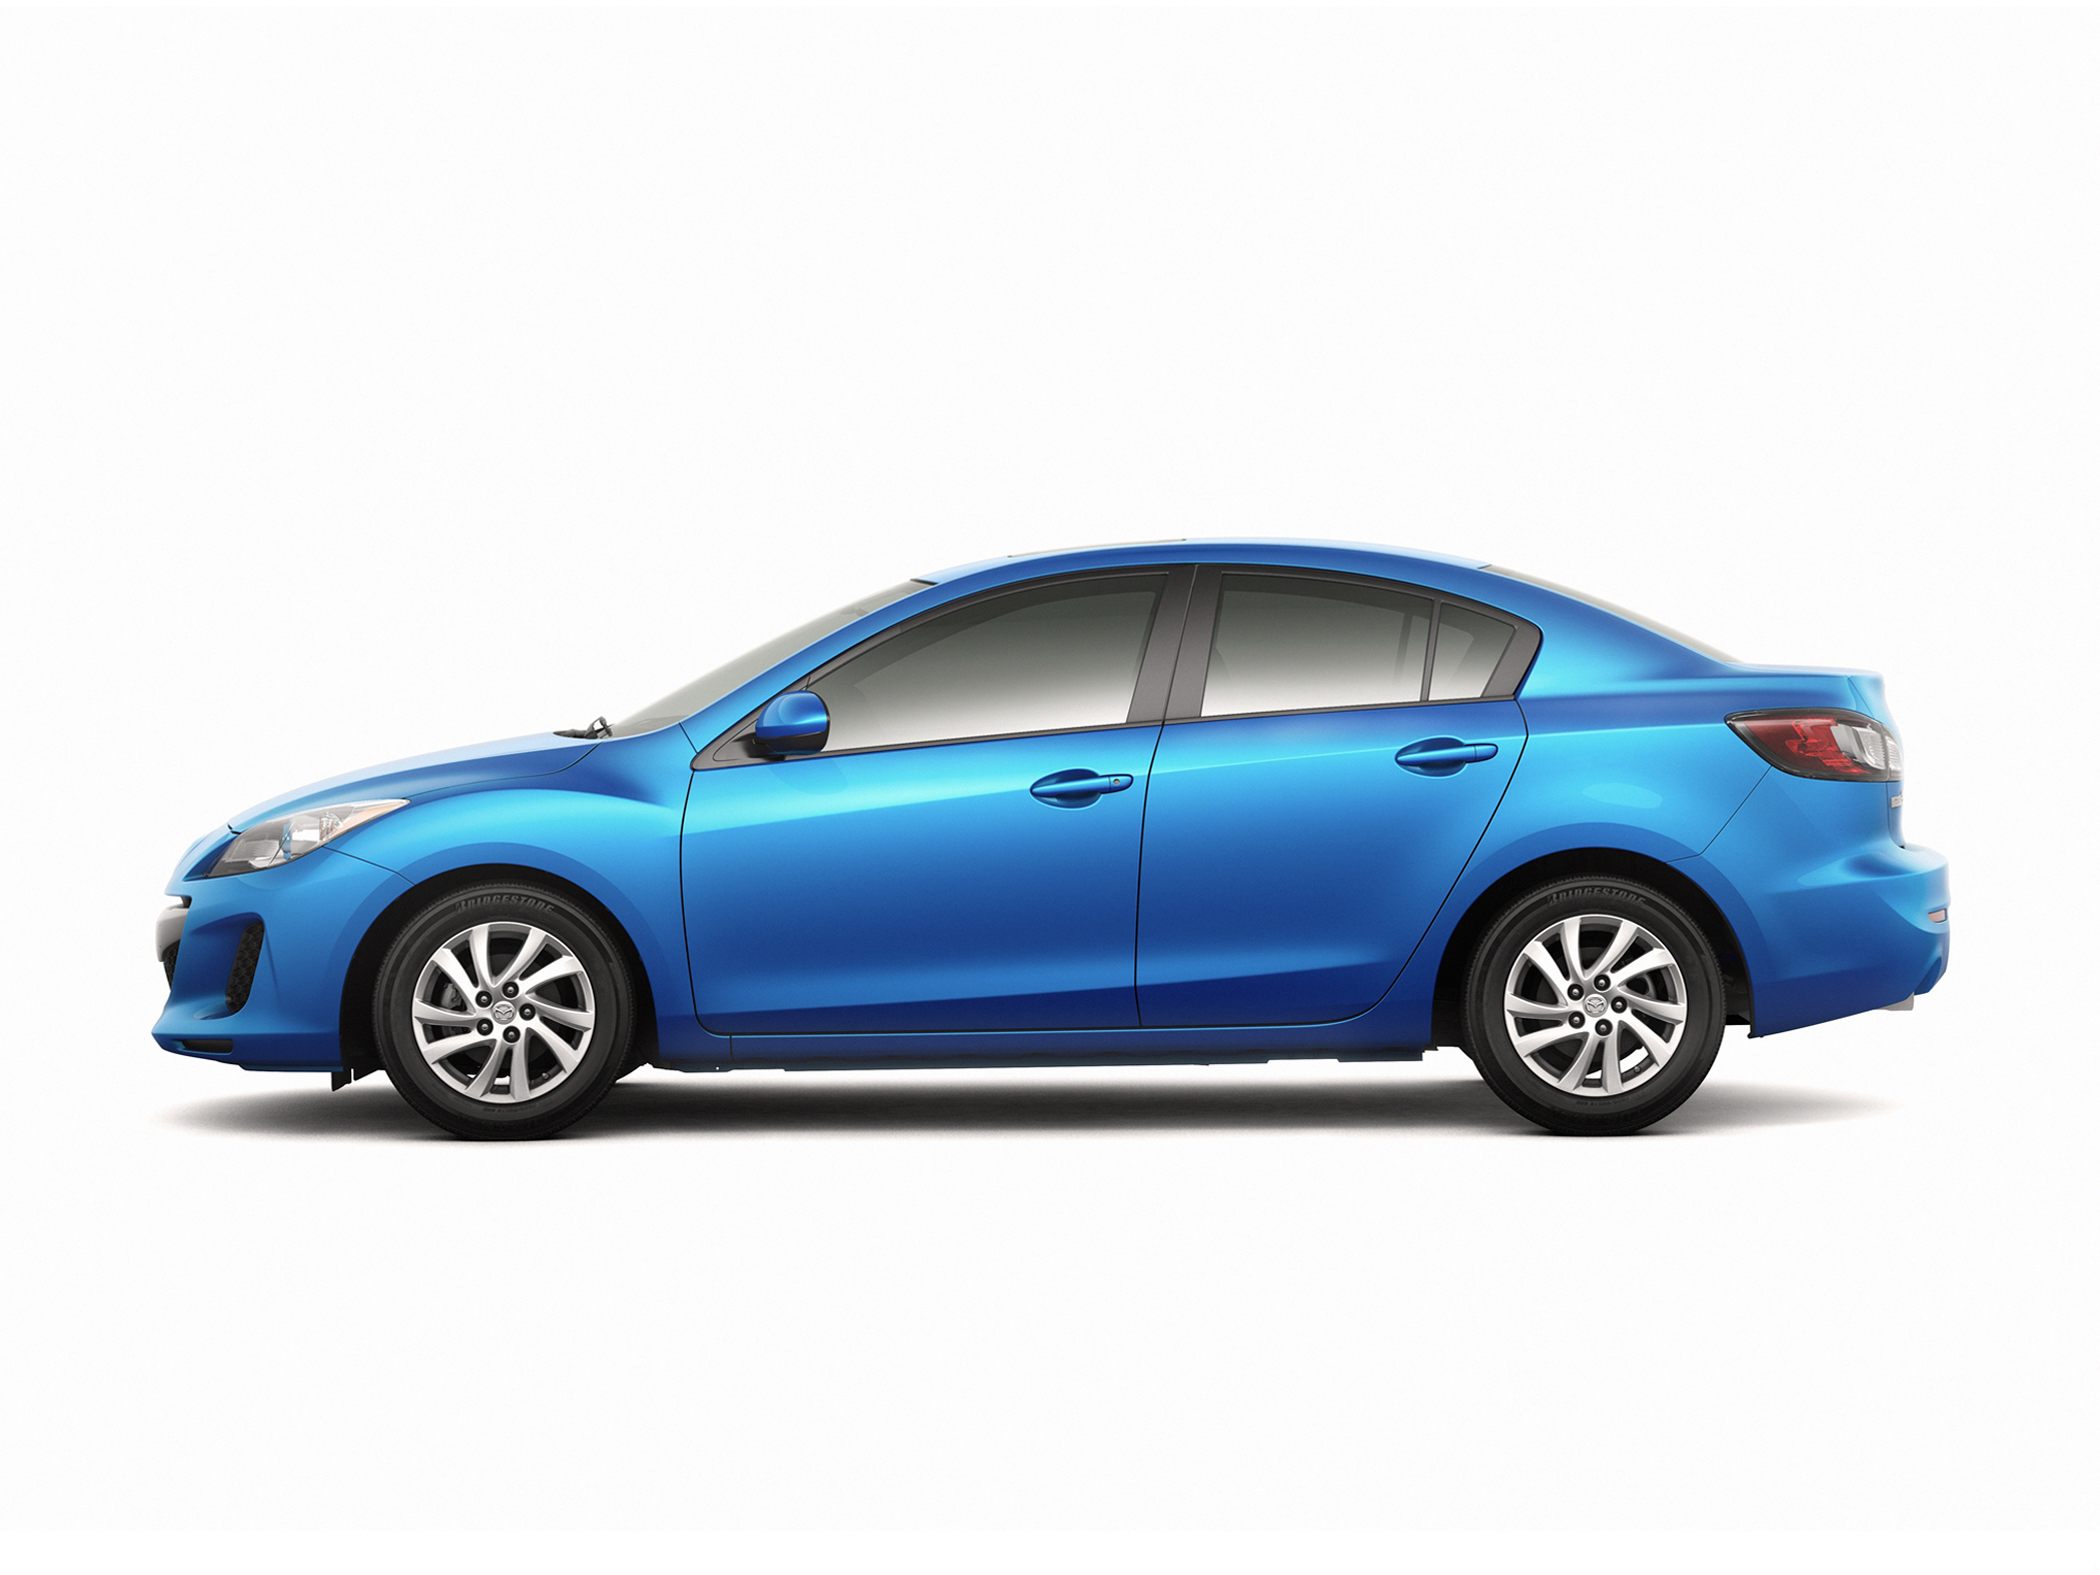 2013 Mazda Mazda3 - Price, Photos, Reviews & Features